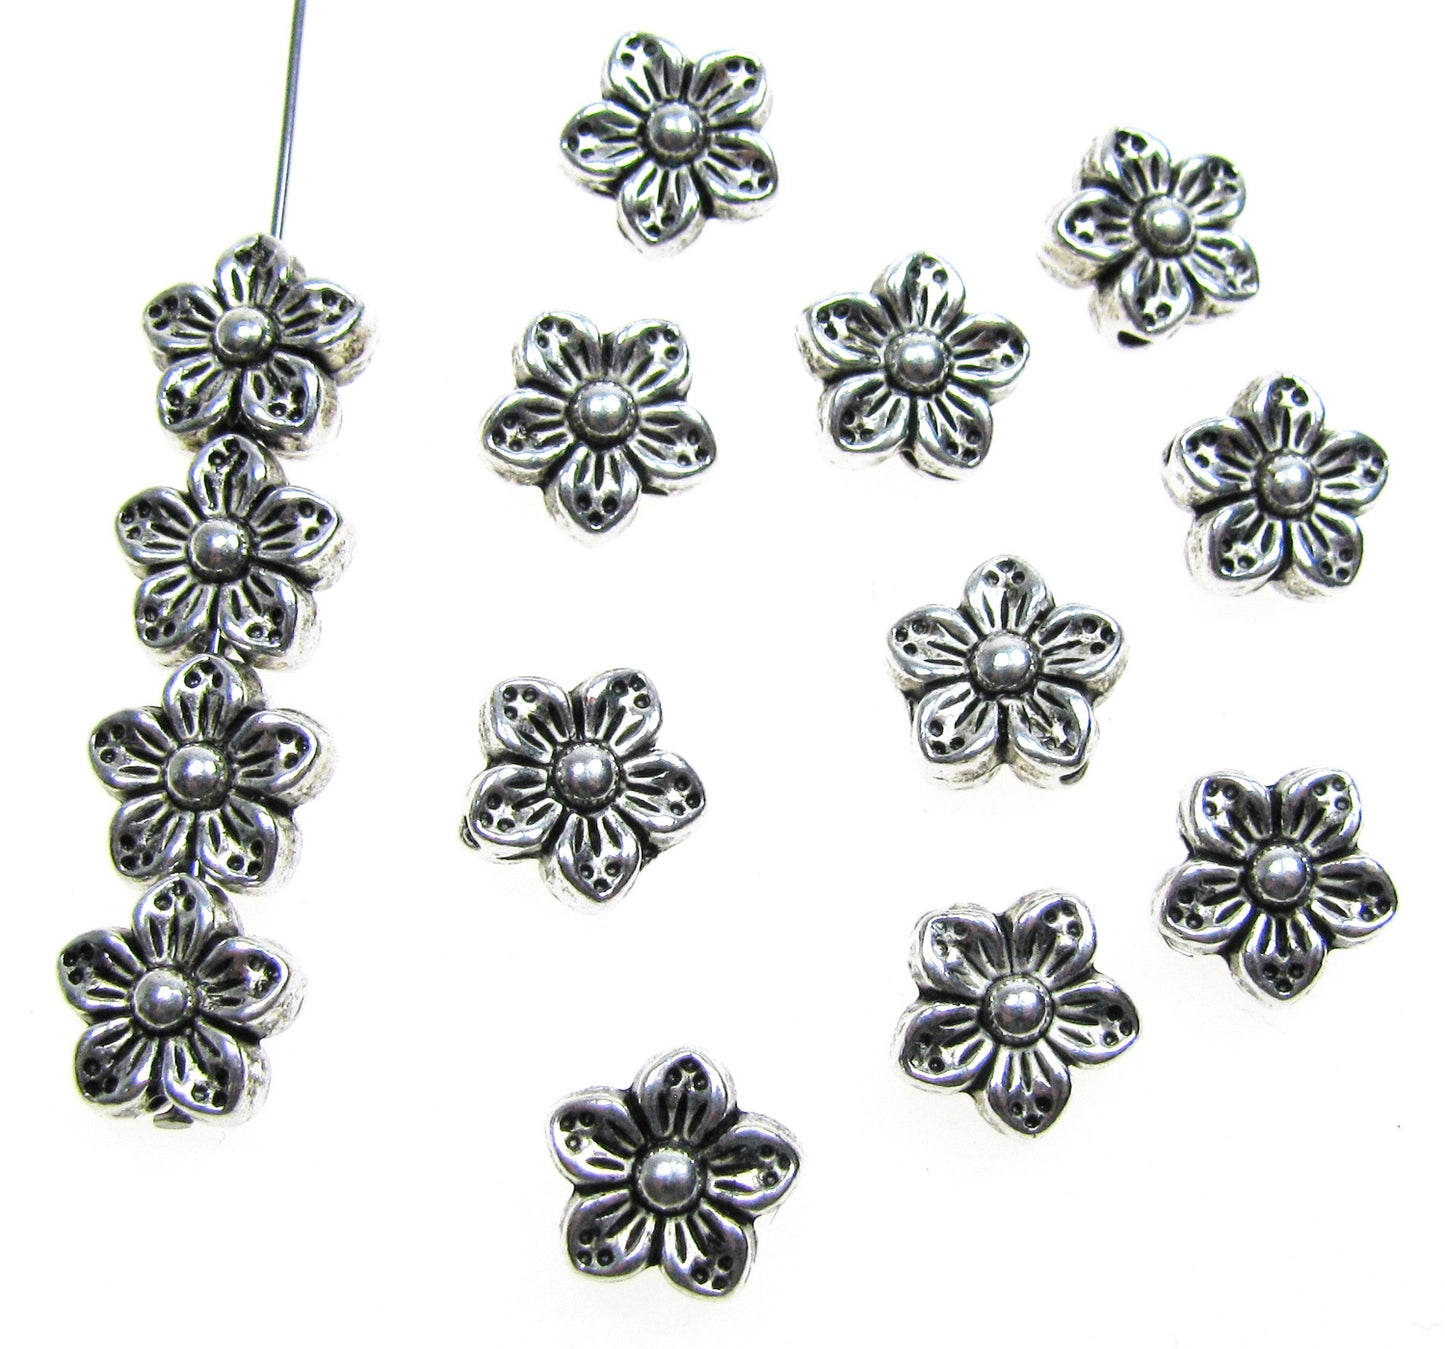 10 Metallperlen Blume silberfarben, 8mm, Zwischenperle, Blüte, Schmuck machen